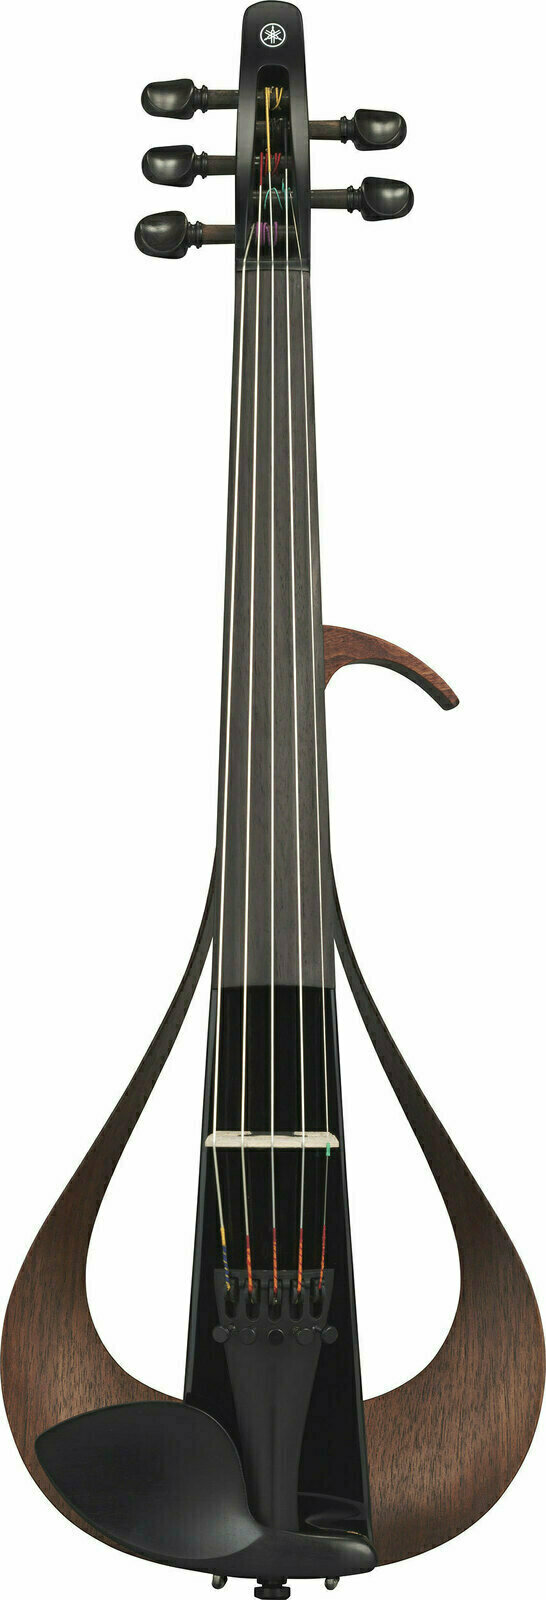 E-Violine Yamaha YEV 105 B 02 4/4 E-Violine